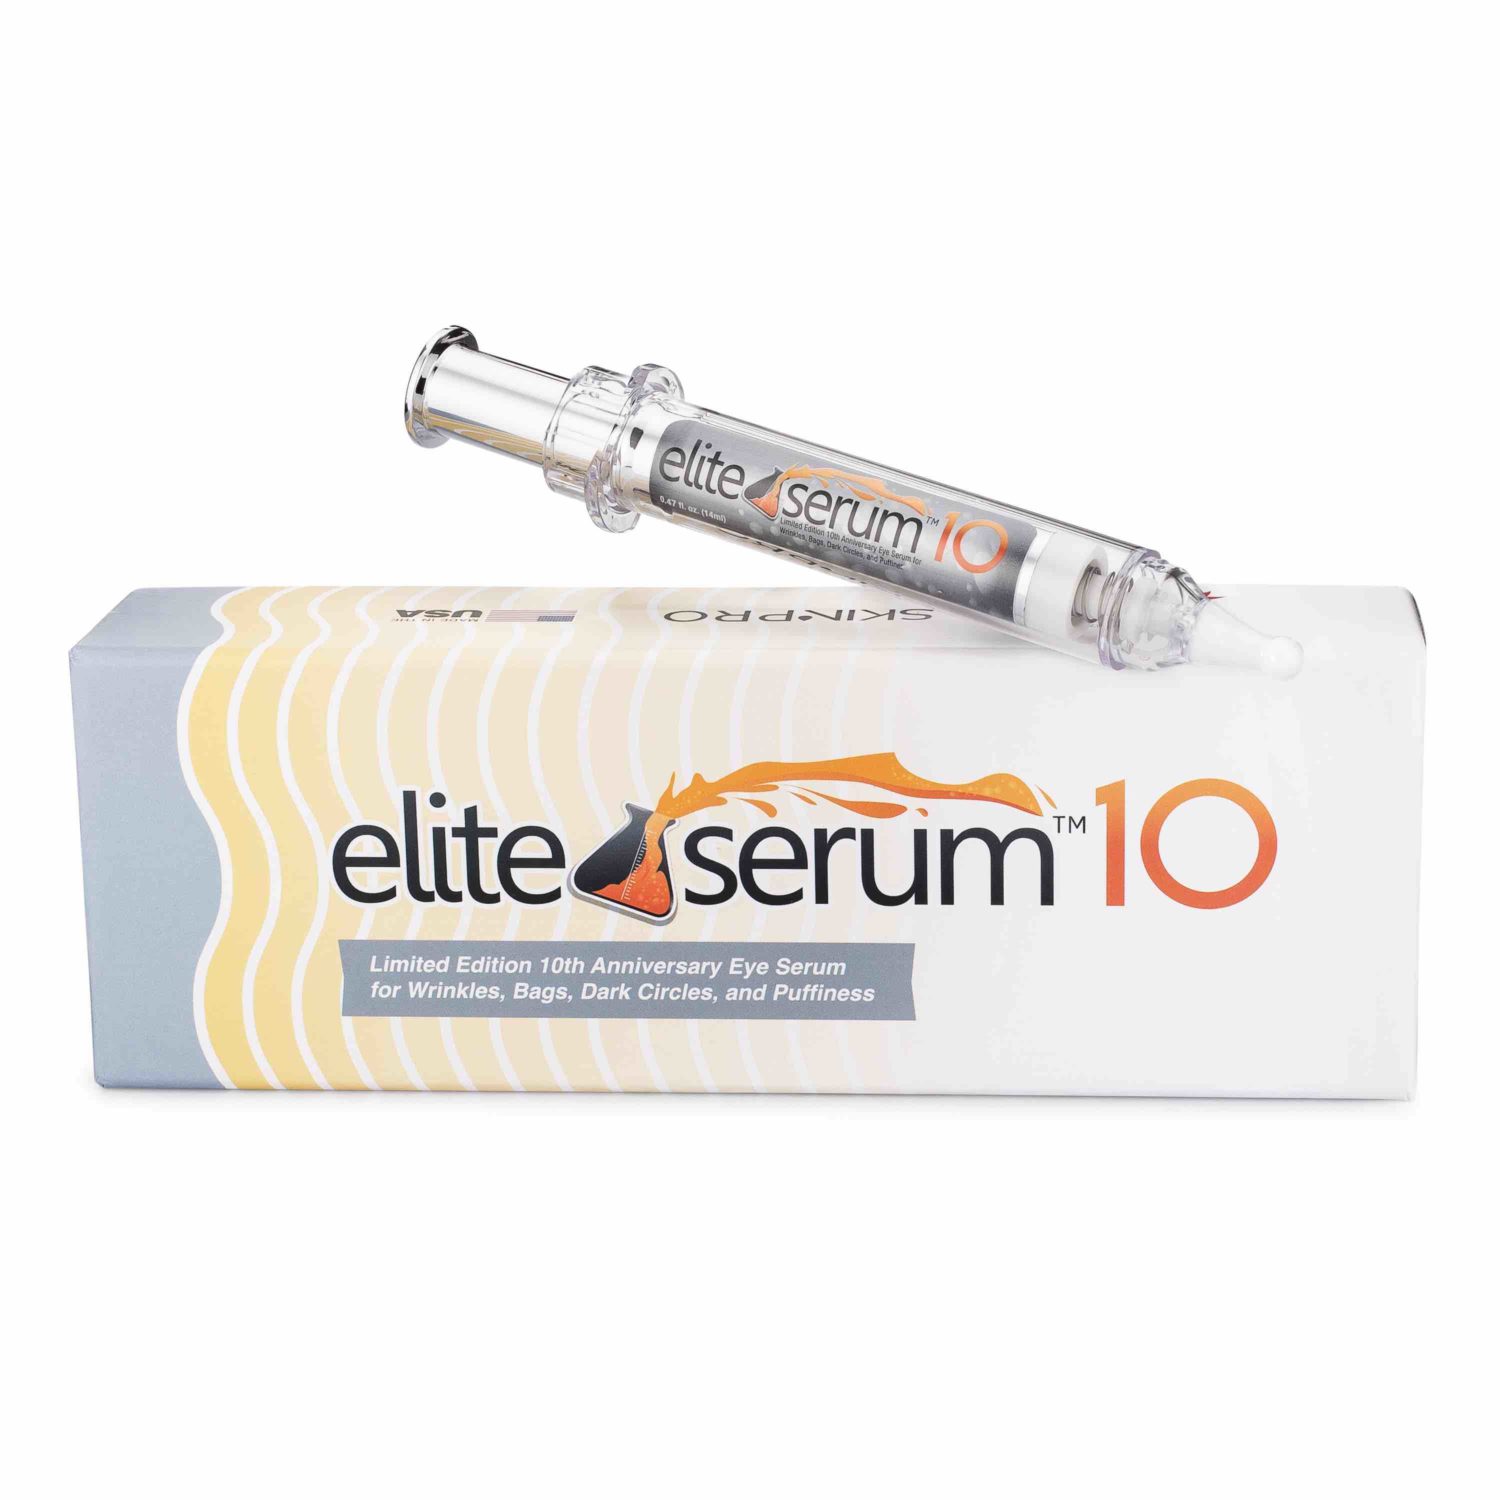 elite serum 10 with dispenser